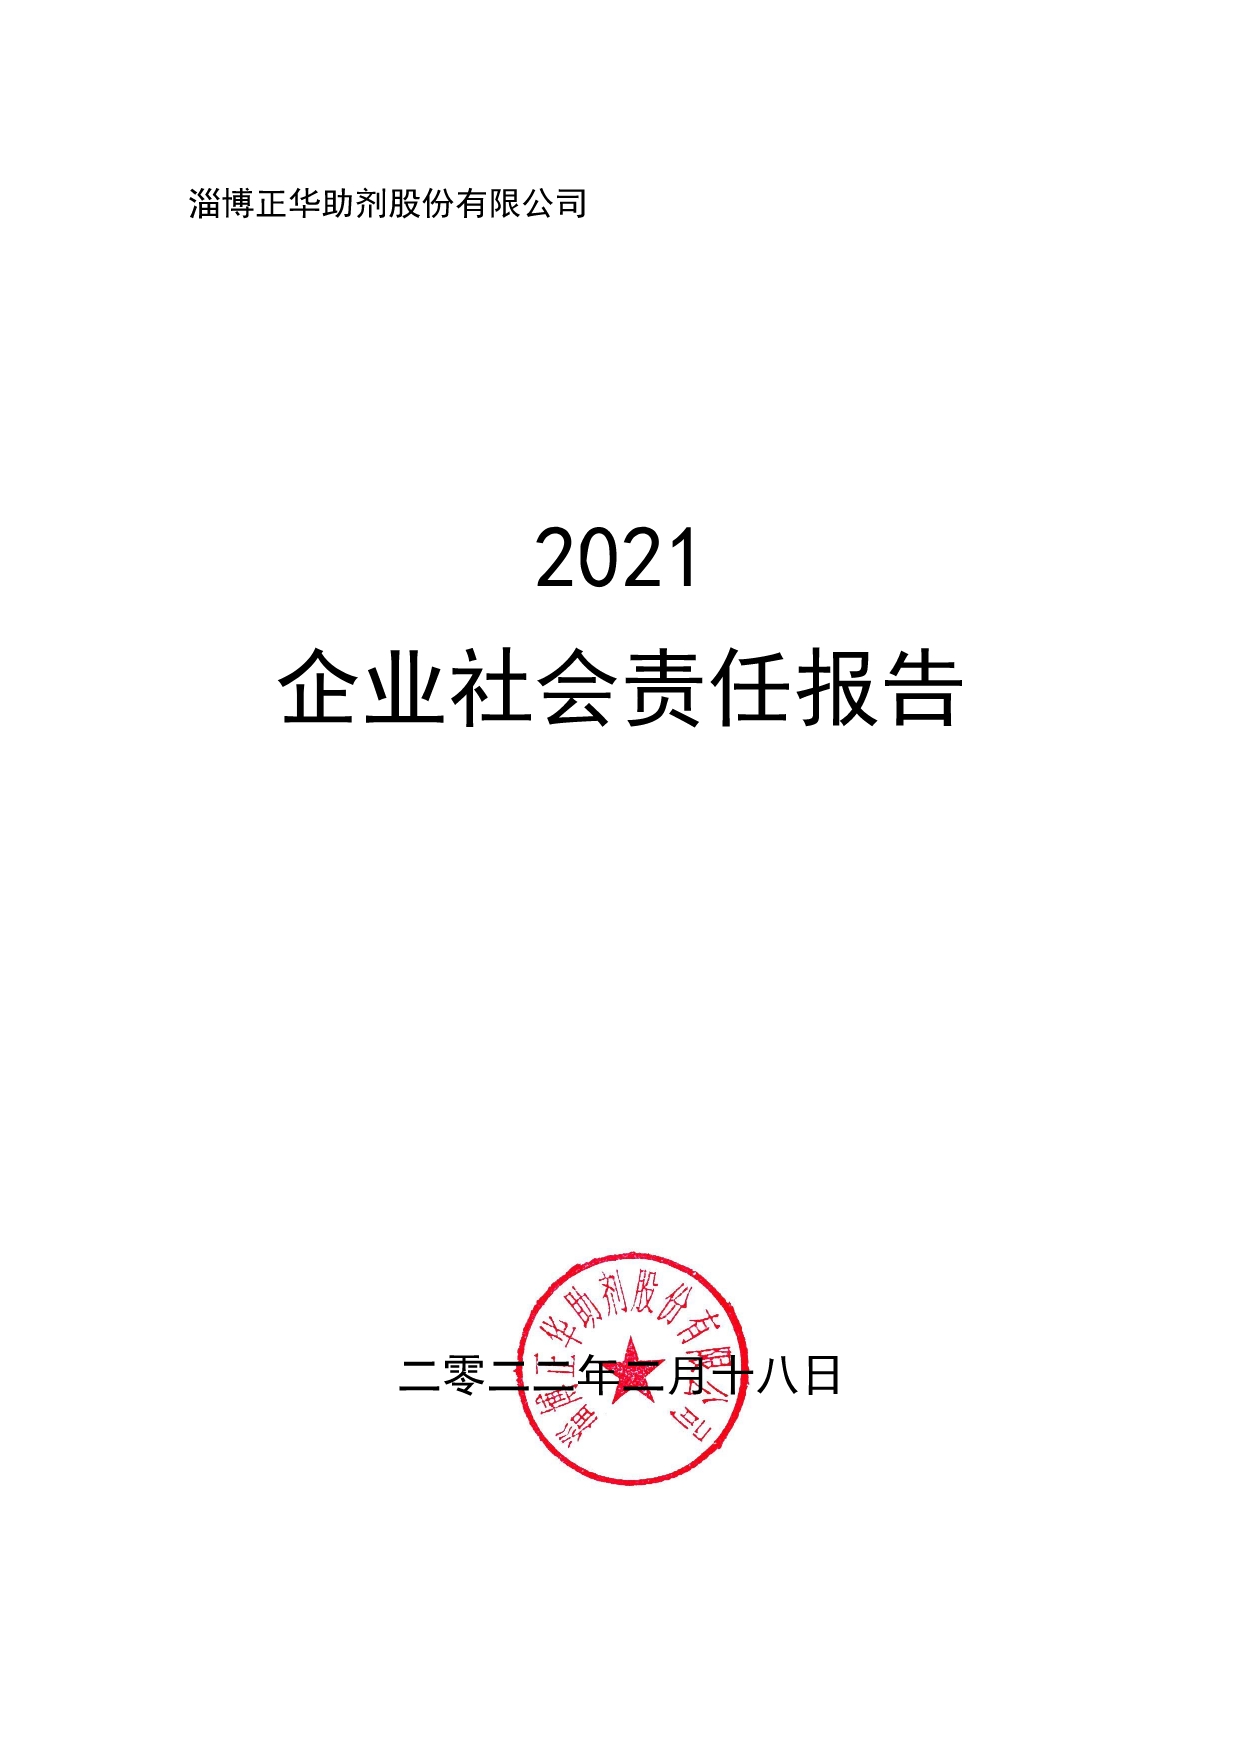 2021企業社會責任報告